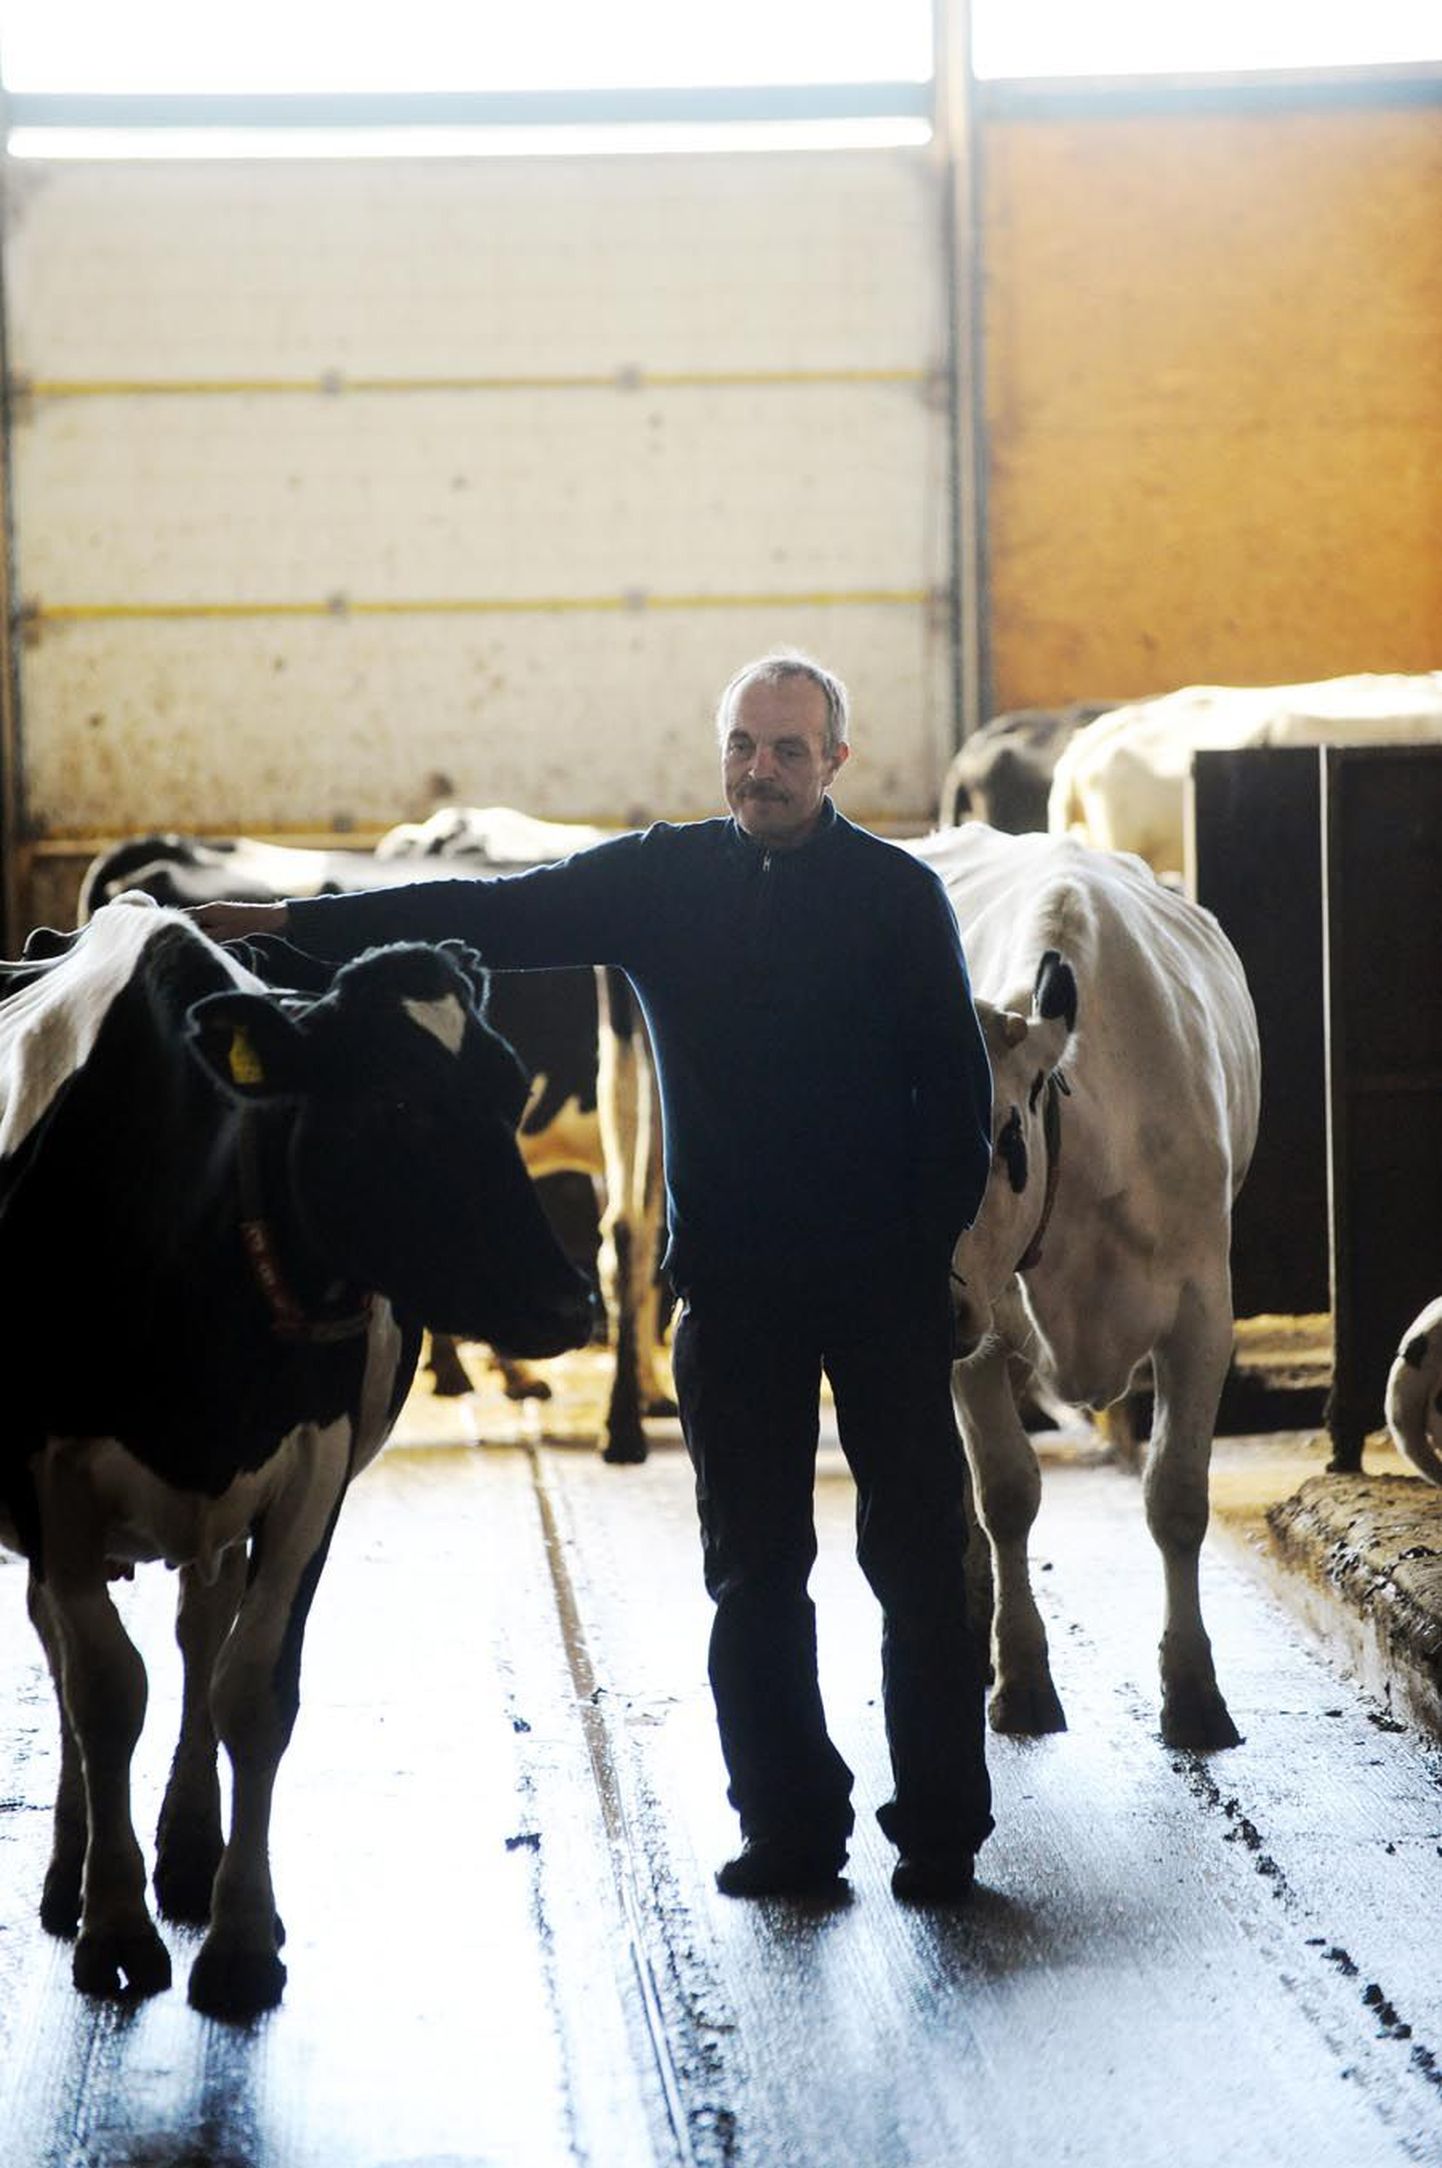 AS Pakari juhataja Endel Albin peab Euroopa Komisjoni ettepanekut väga õigeks, kuid kahtleb, kas see aitab põllumeestel piima eest kõrgemat hinda saada.